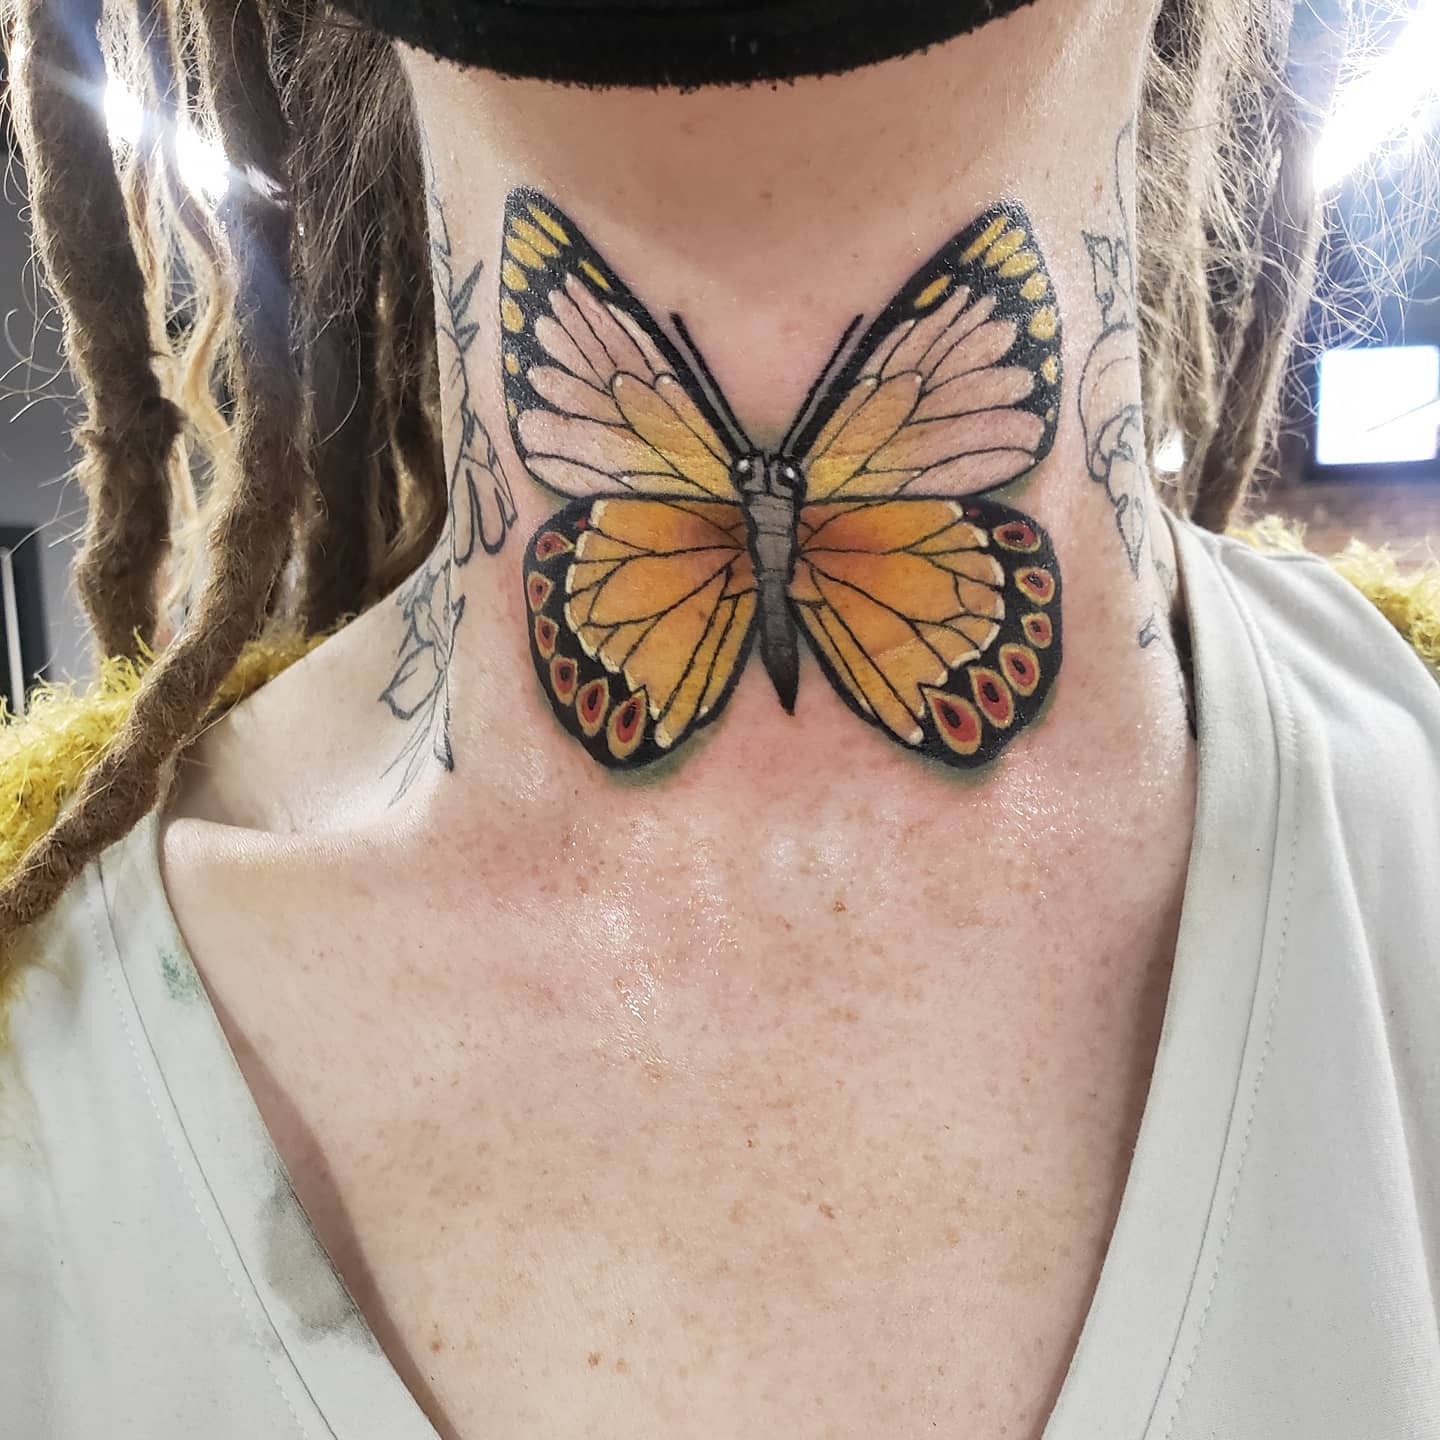 Tatuaje de mariposa en el cuello.